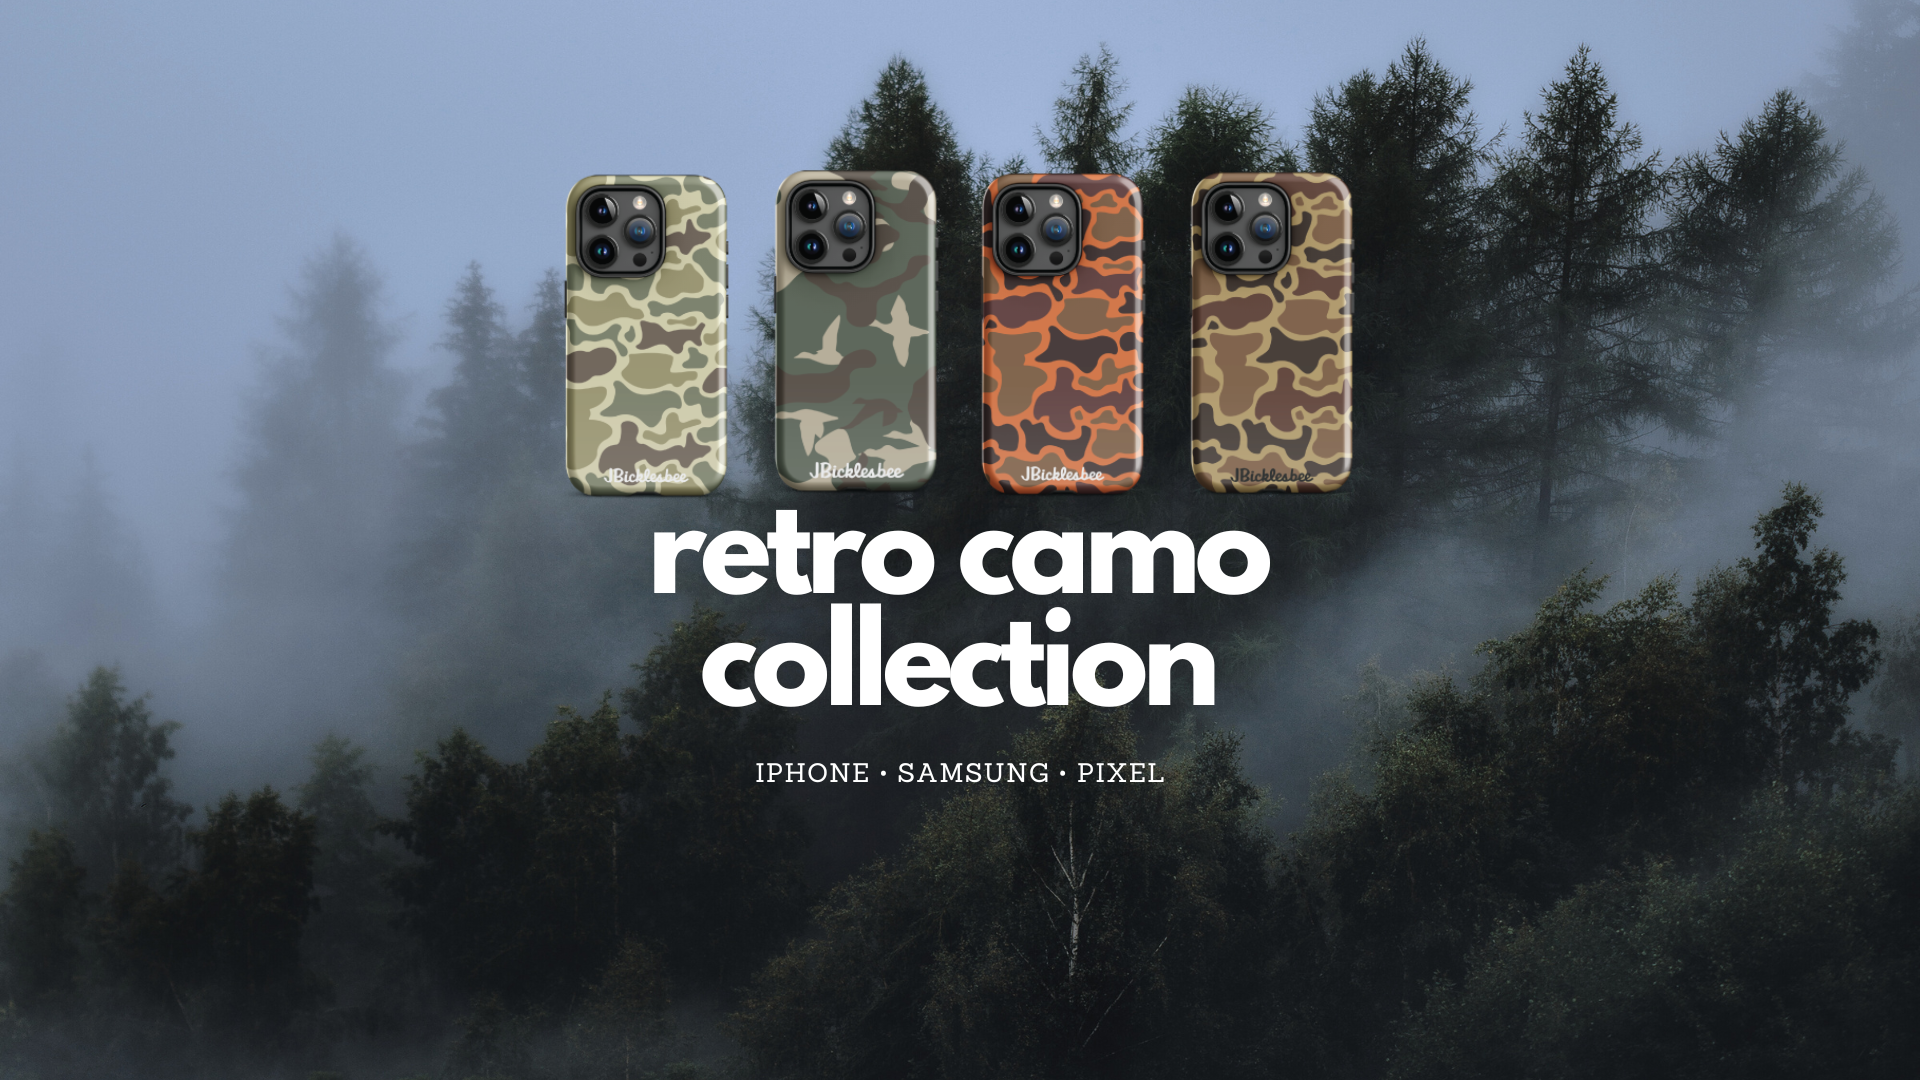 retro camo phone case collection